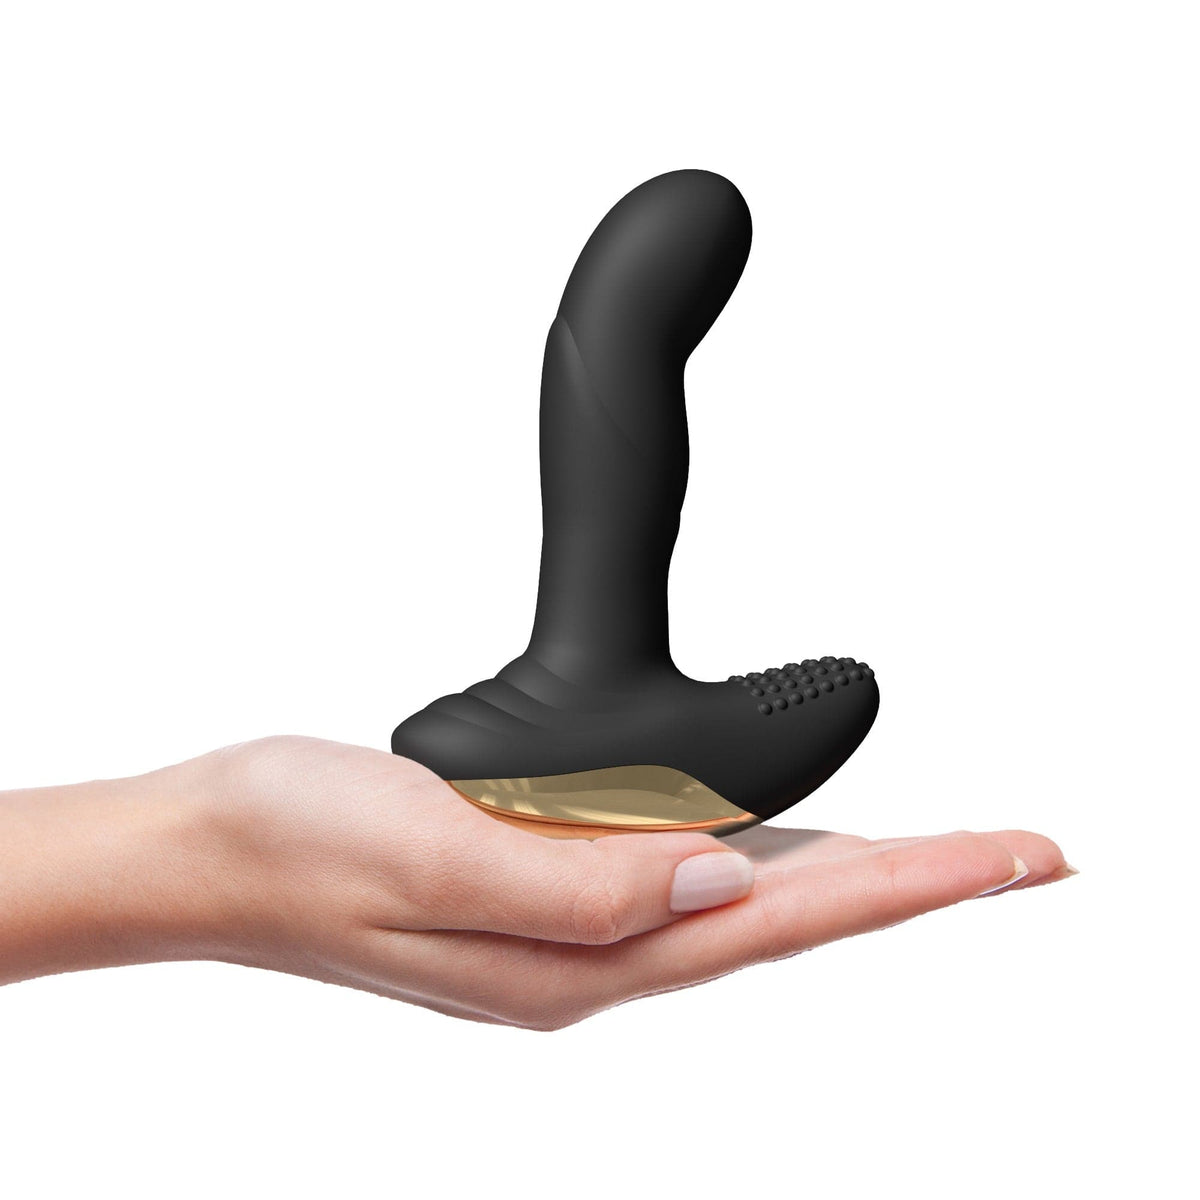 P-Finger Remote Prostate Stimulator - Dorcel Anal Toys Dorcel   